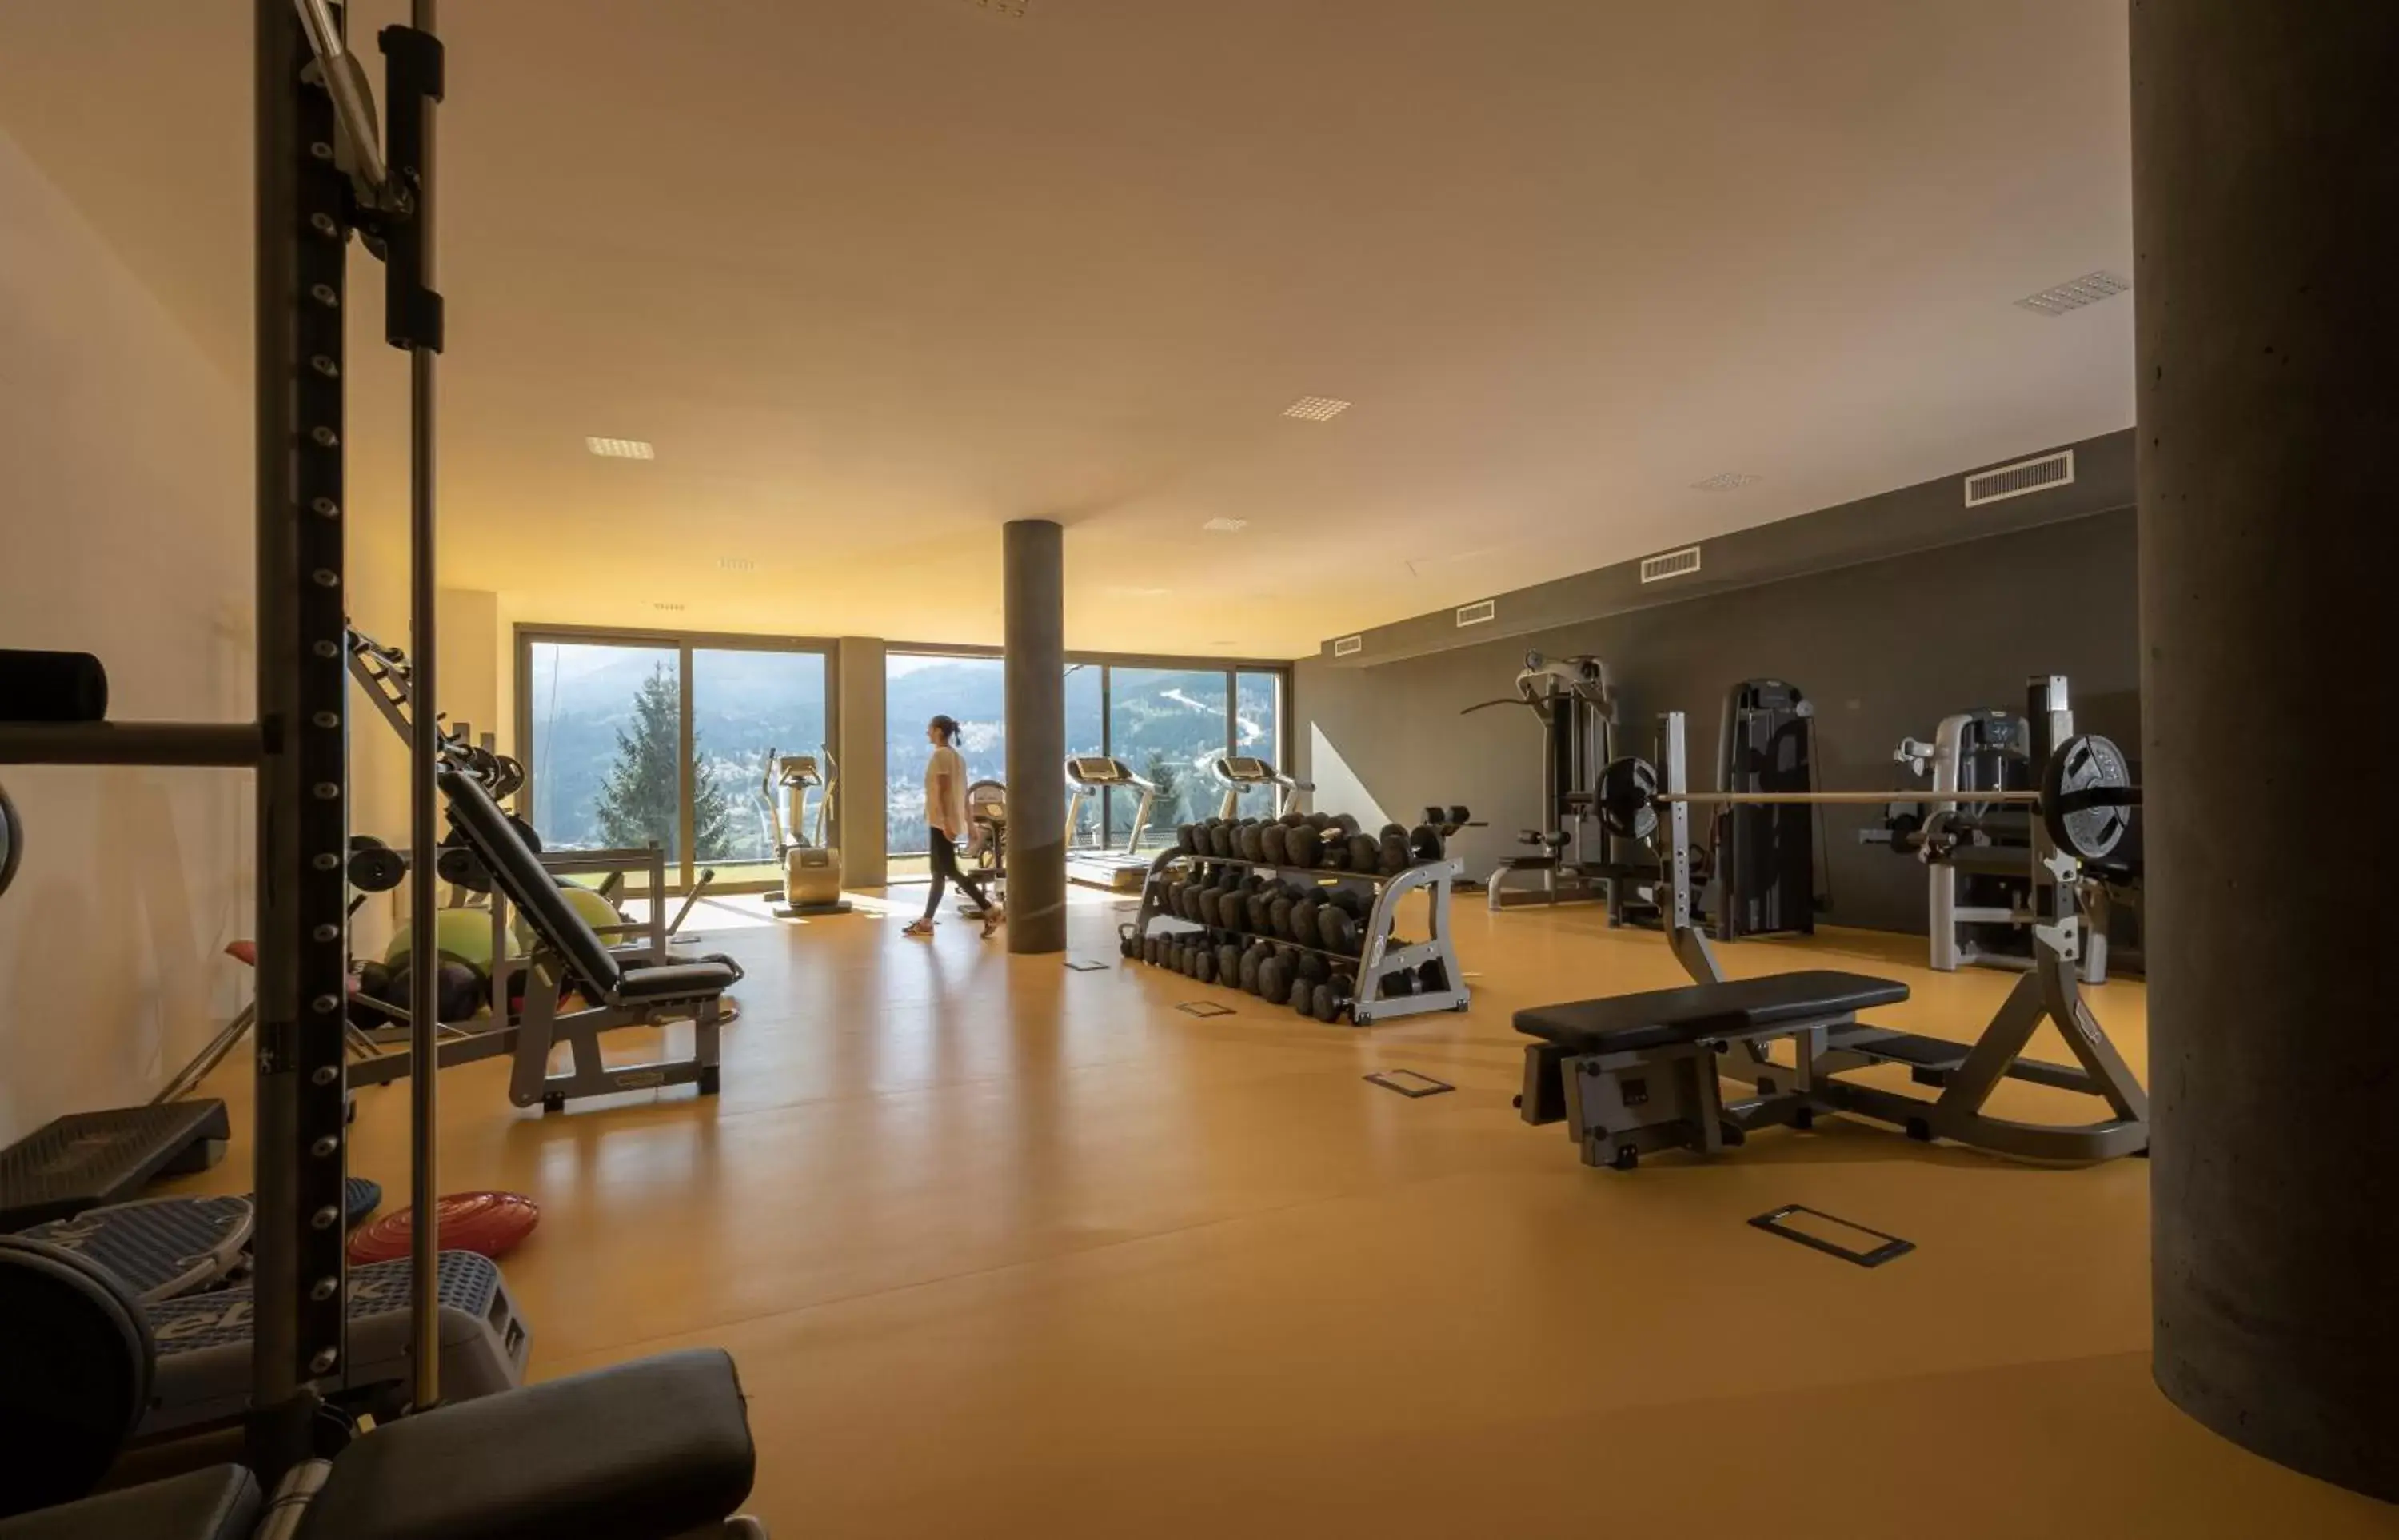 Fitness centre/facilities, Fitness Center/Facilities in La Roccia Wellness Hotel